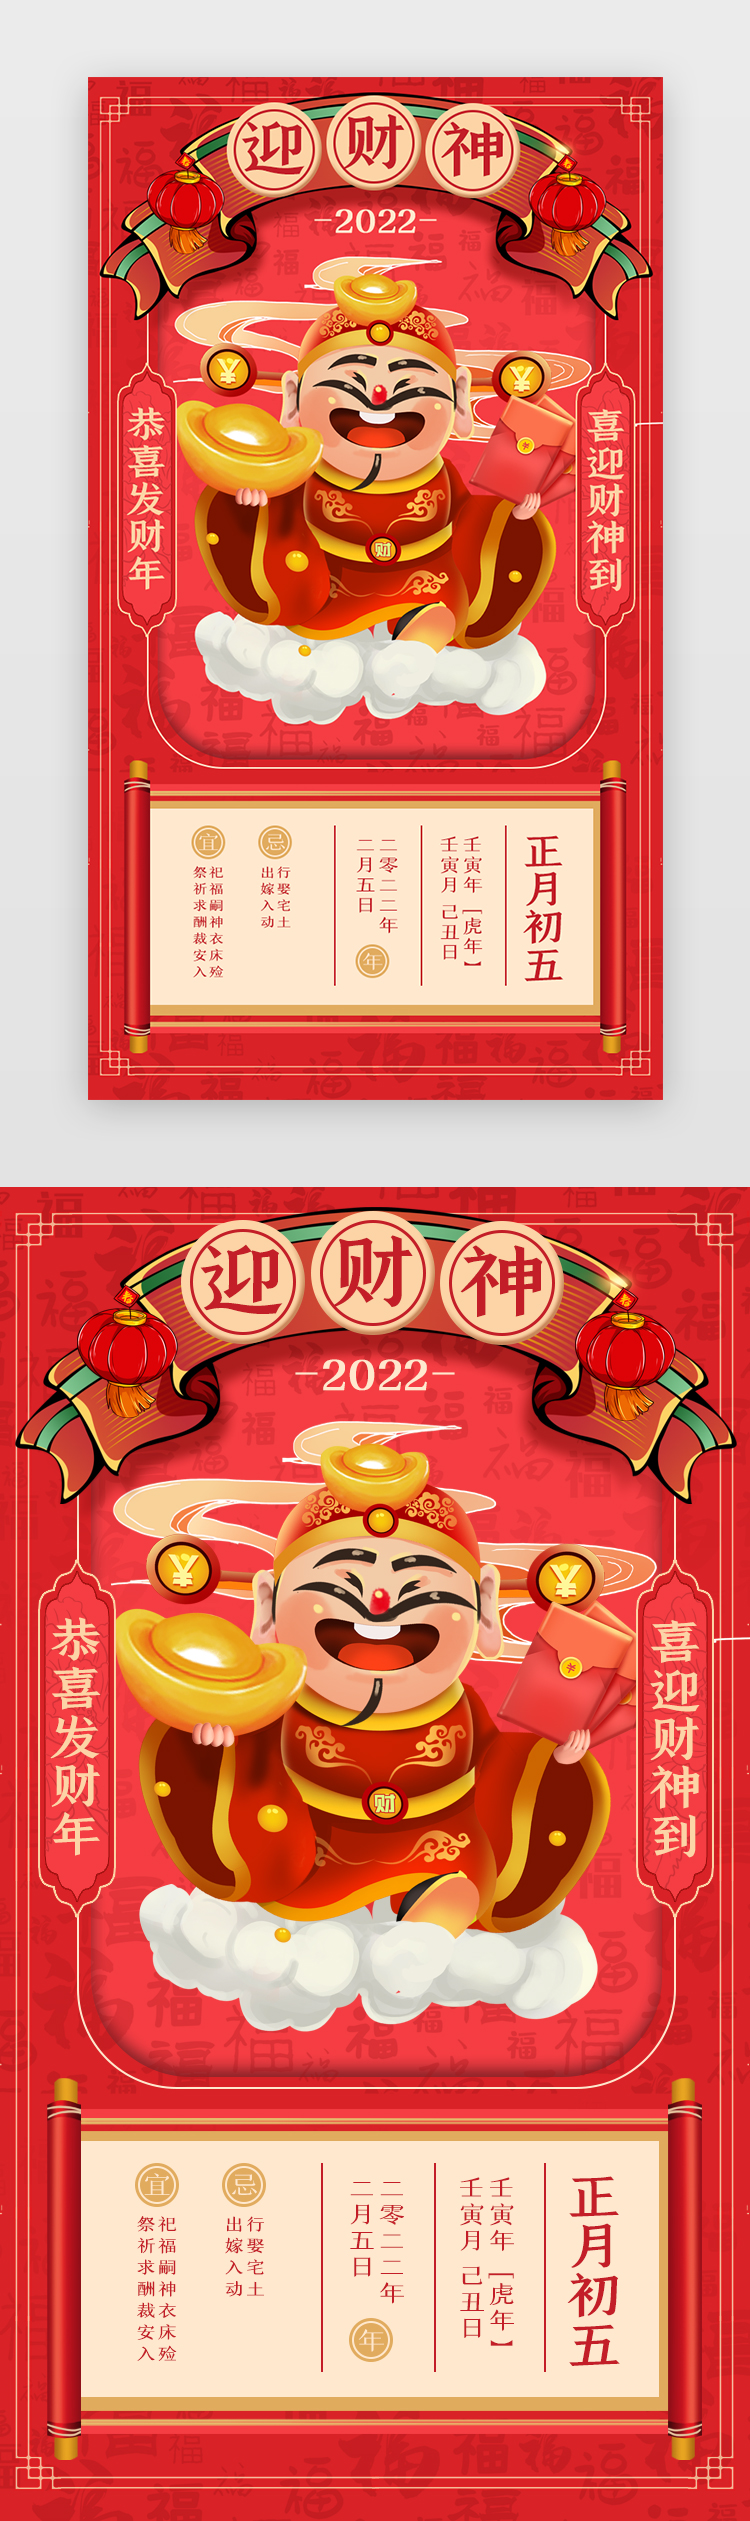 新年年俗App闪屏正月初五红色迎财神图片